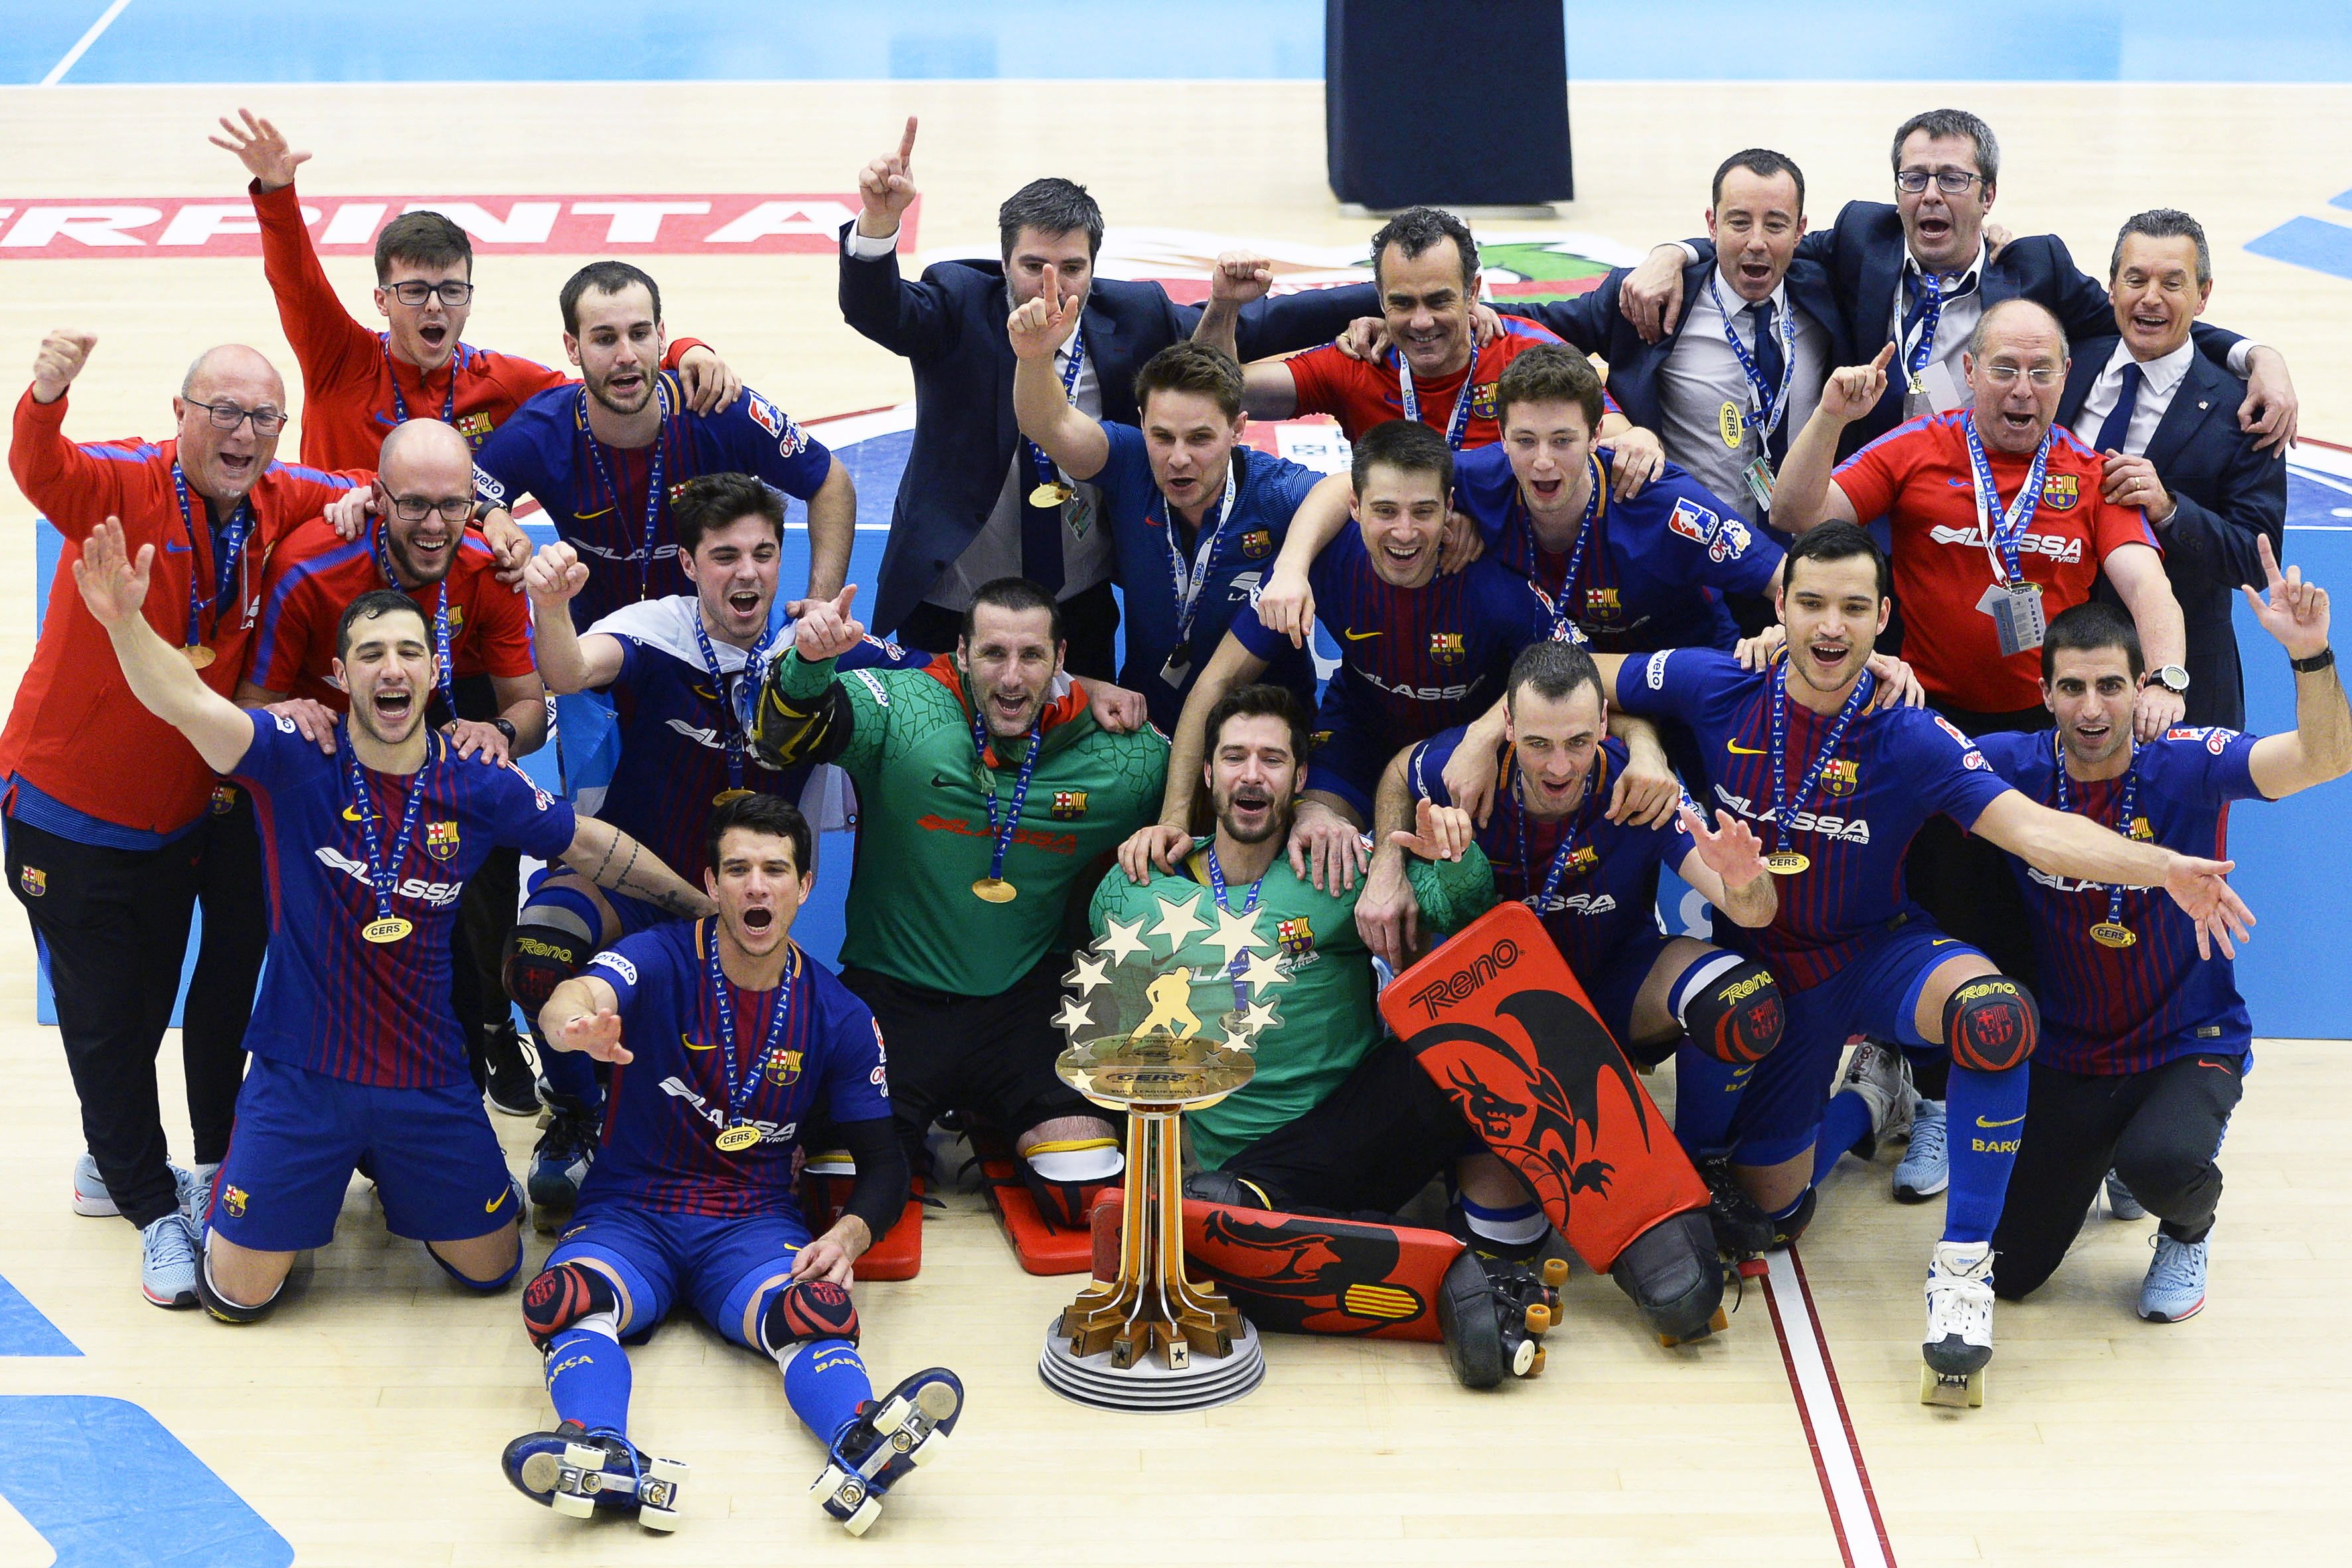 El Barça d'hoquei patins guanya la seva 22a Lliga Europea (4-2)